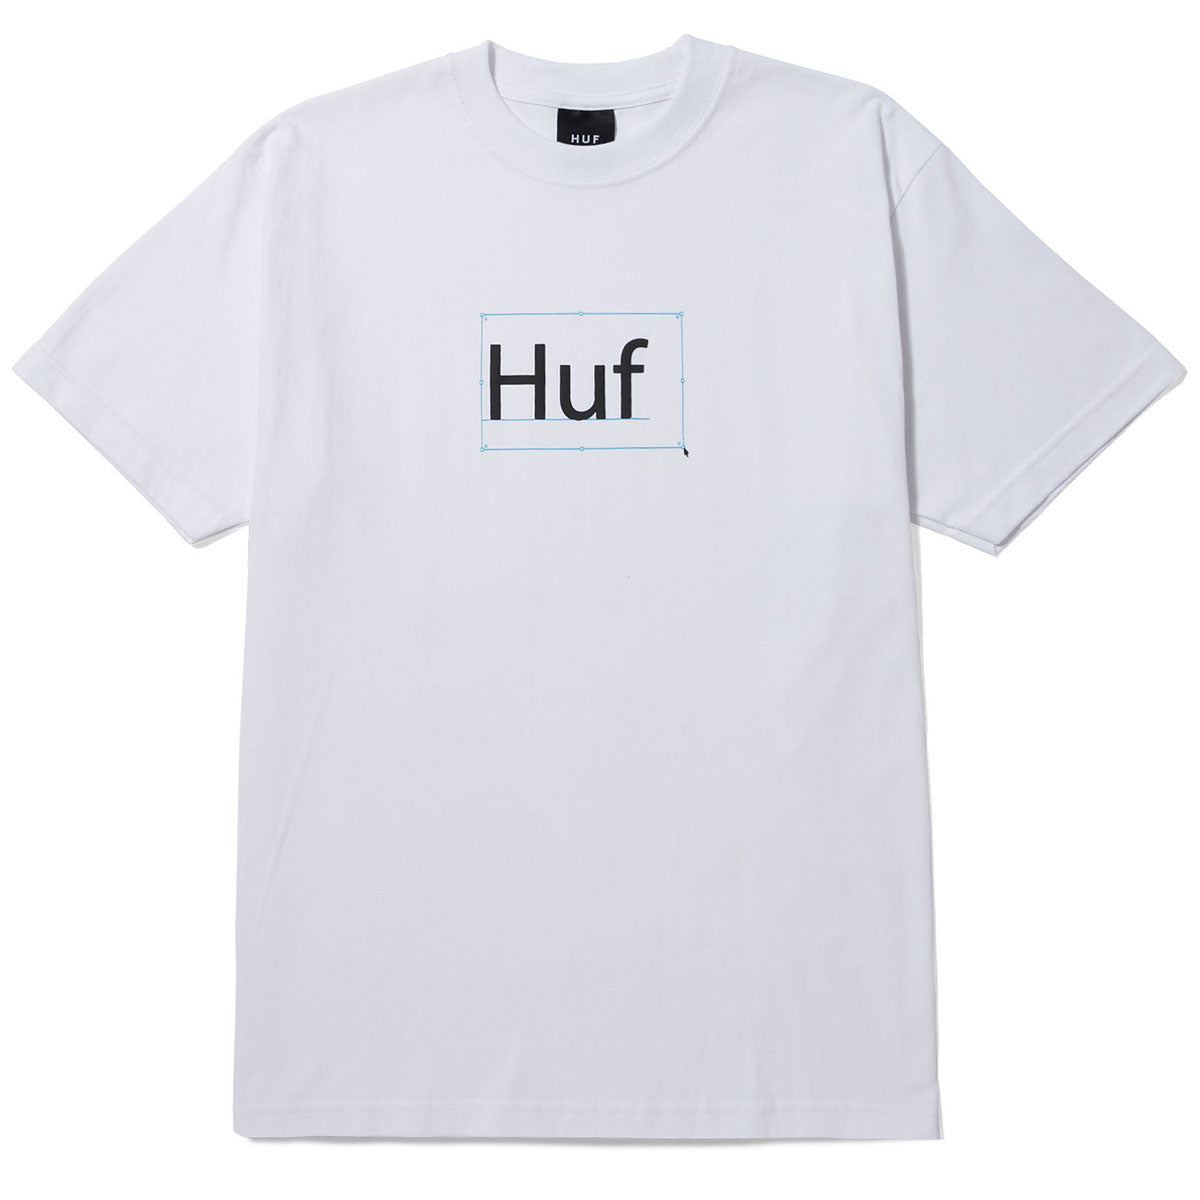 HUF Deadline T-Shirt - White image 1